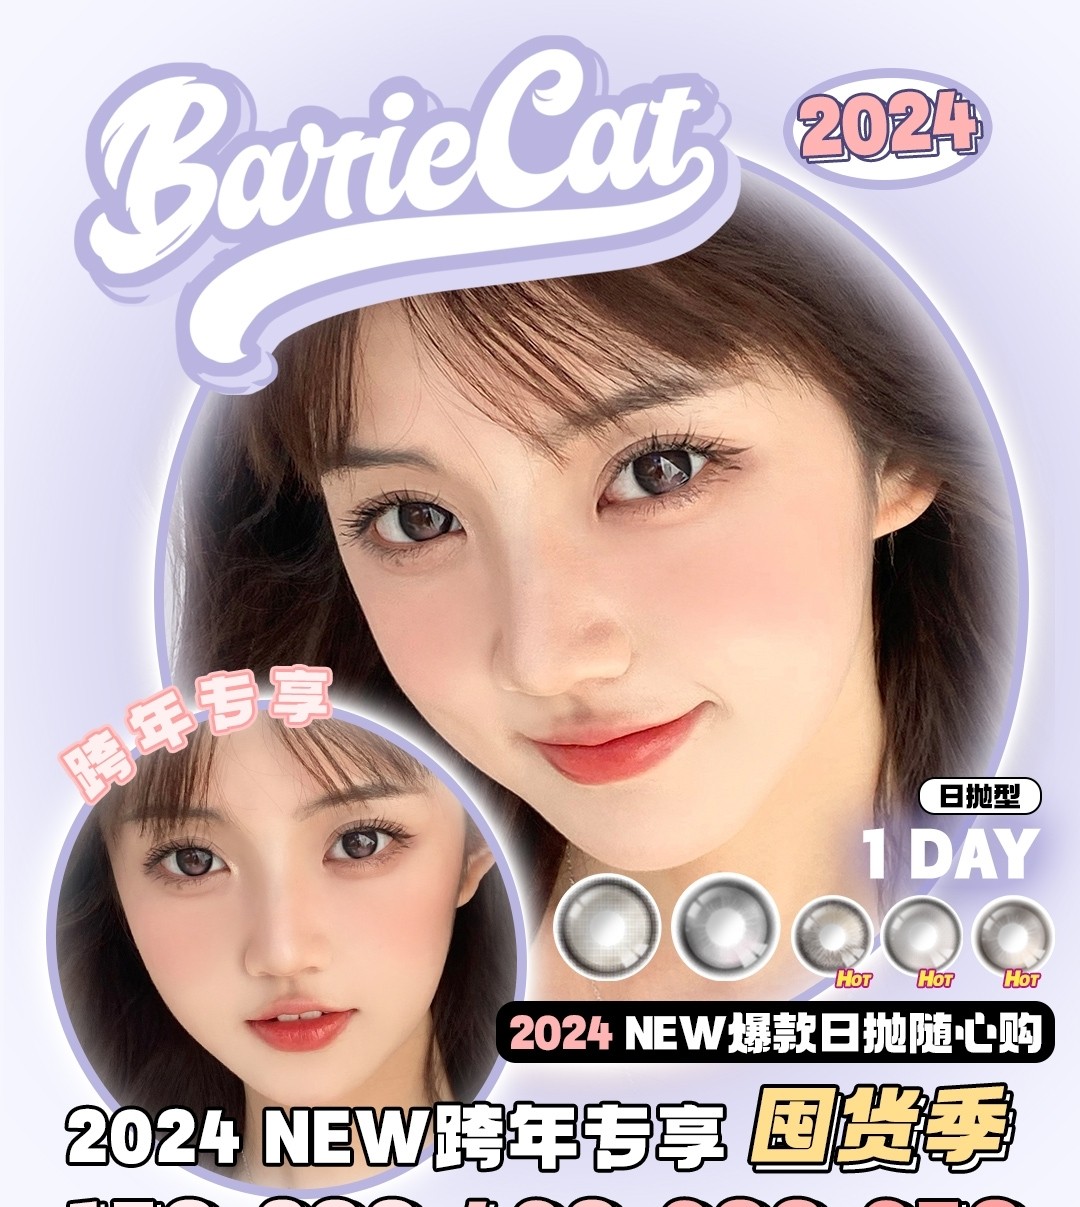 【日抛】BarieCat 2024NEW跨年专享国货季 日抛随心购 美貌随心搭